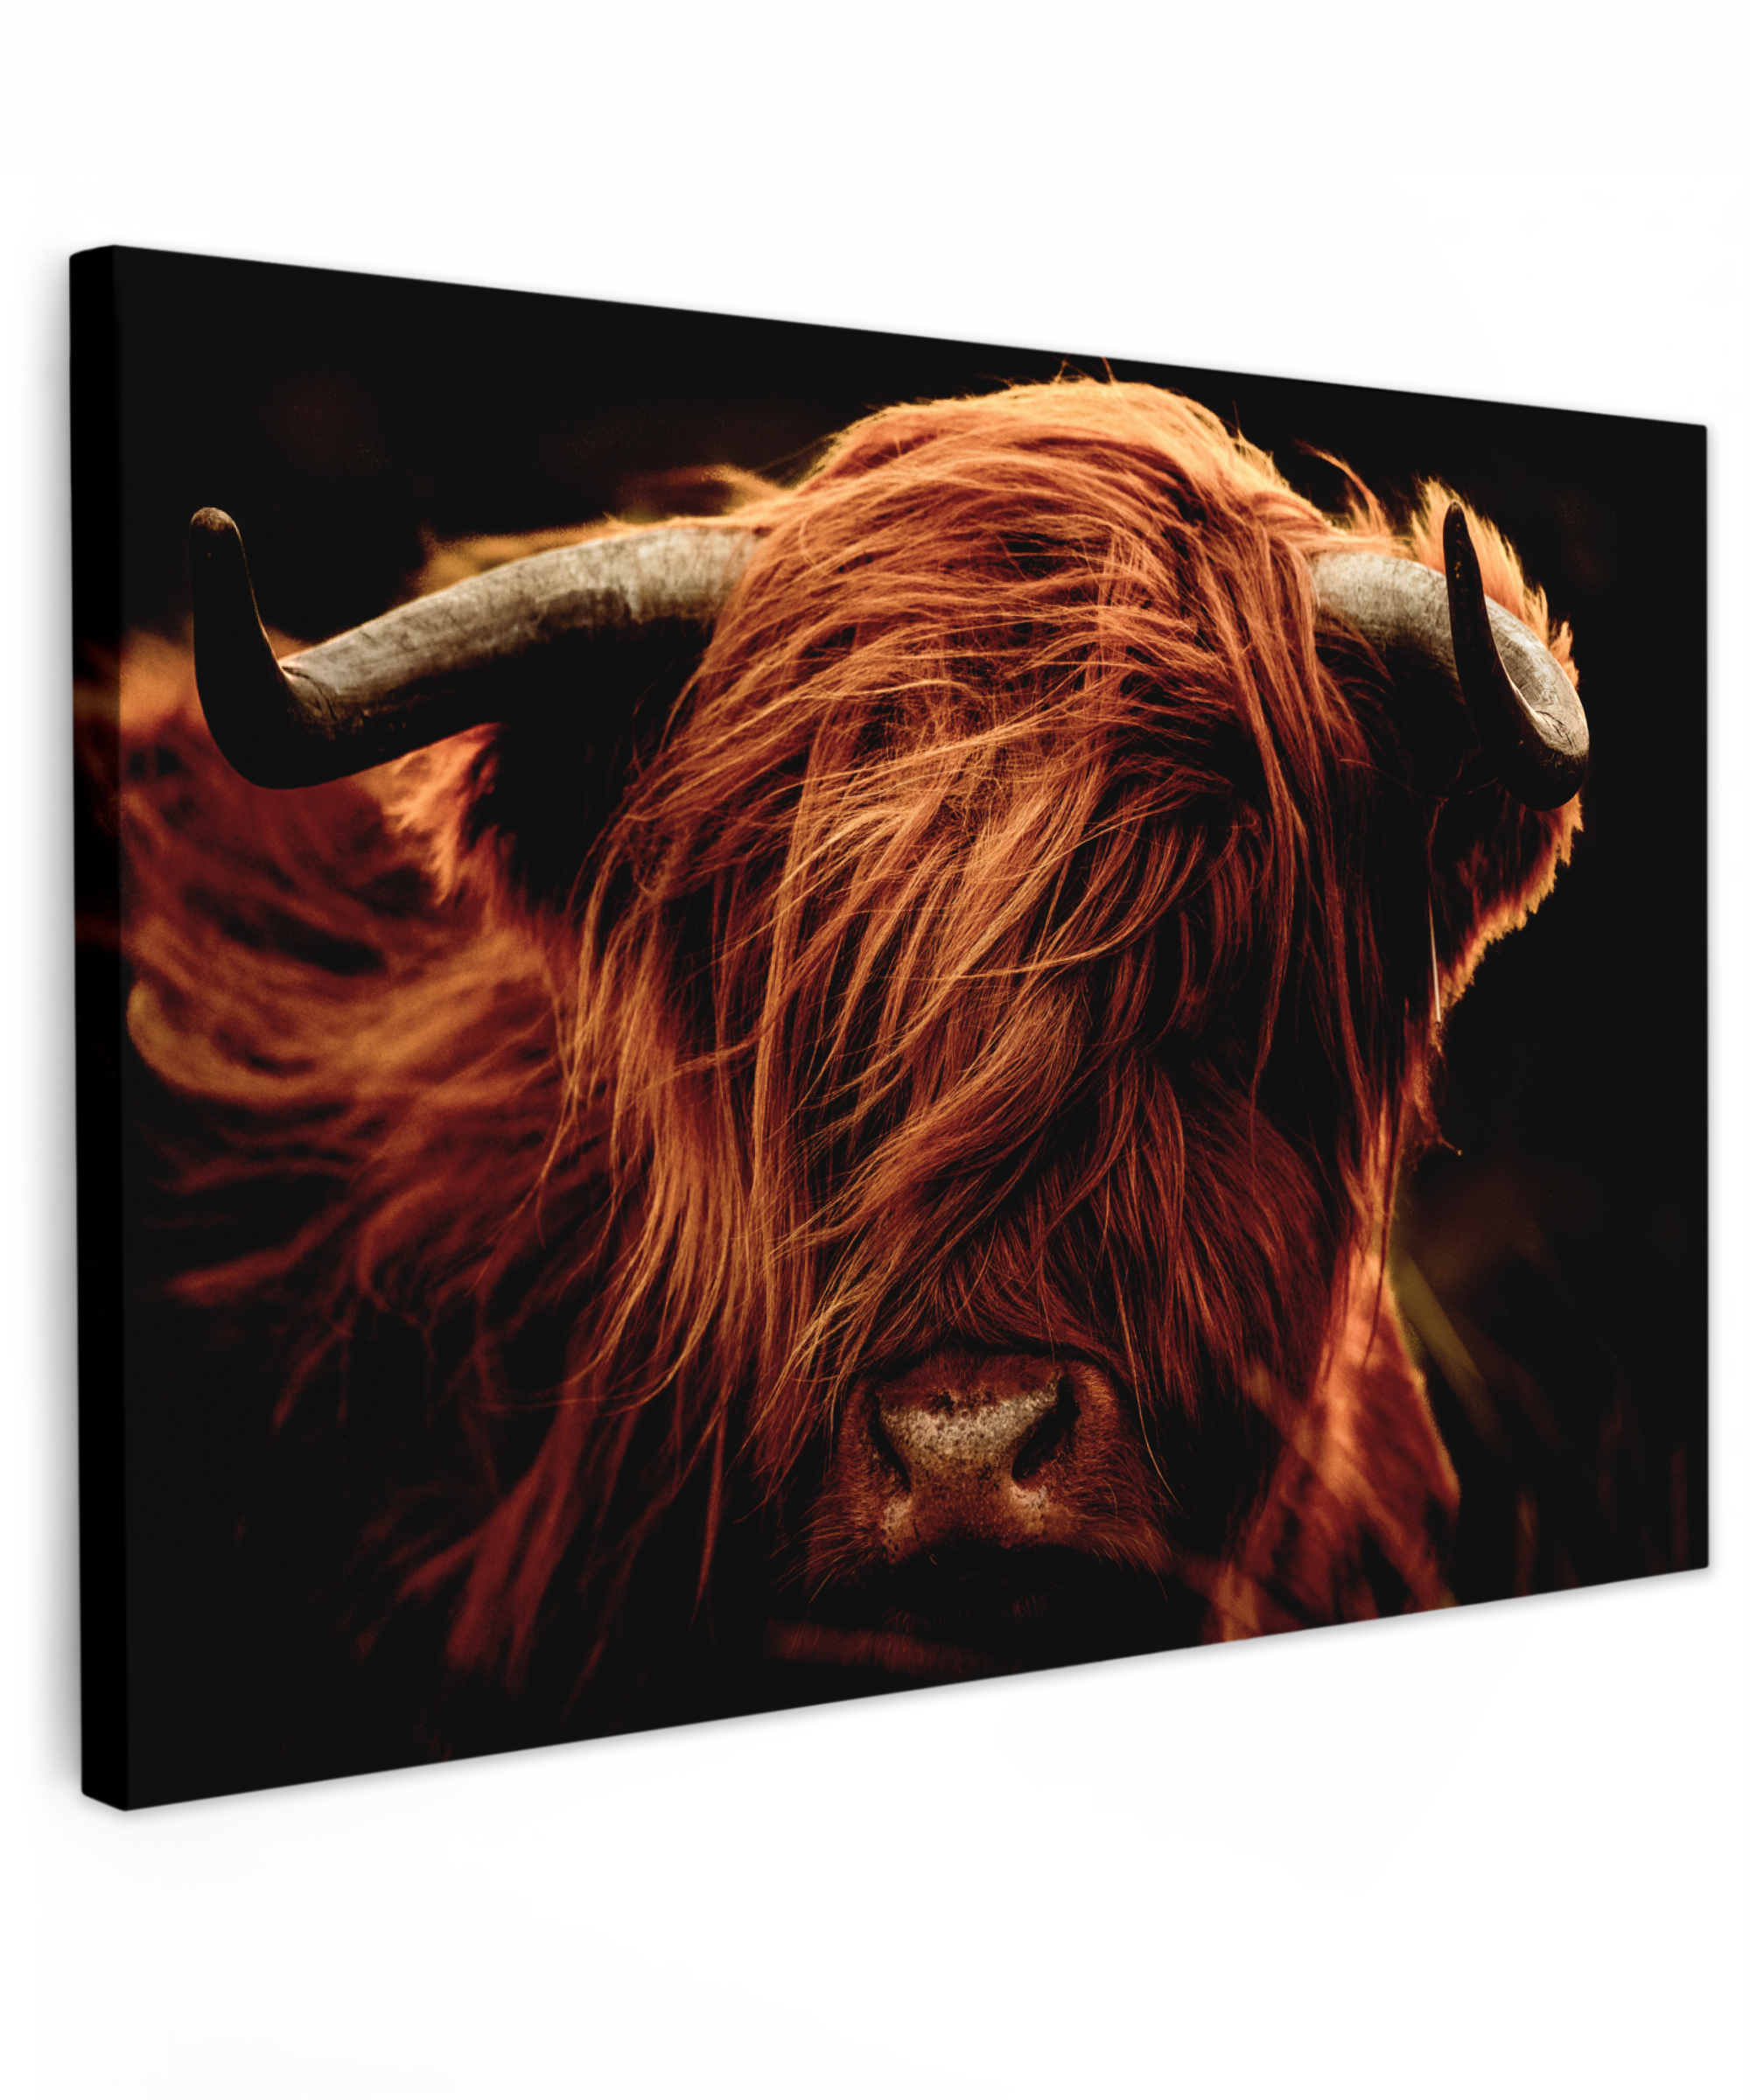 Tableau sur toile - Highlander écossais - Tête de vache - Cornes - Portrait - Animaux